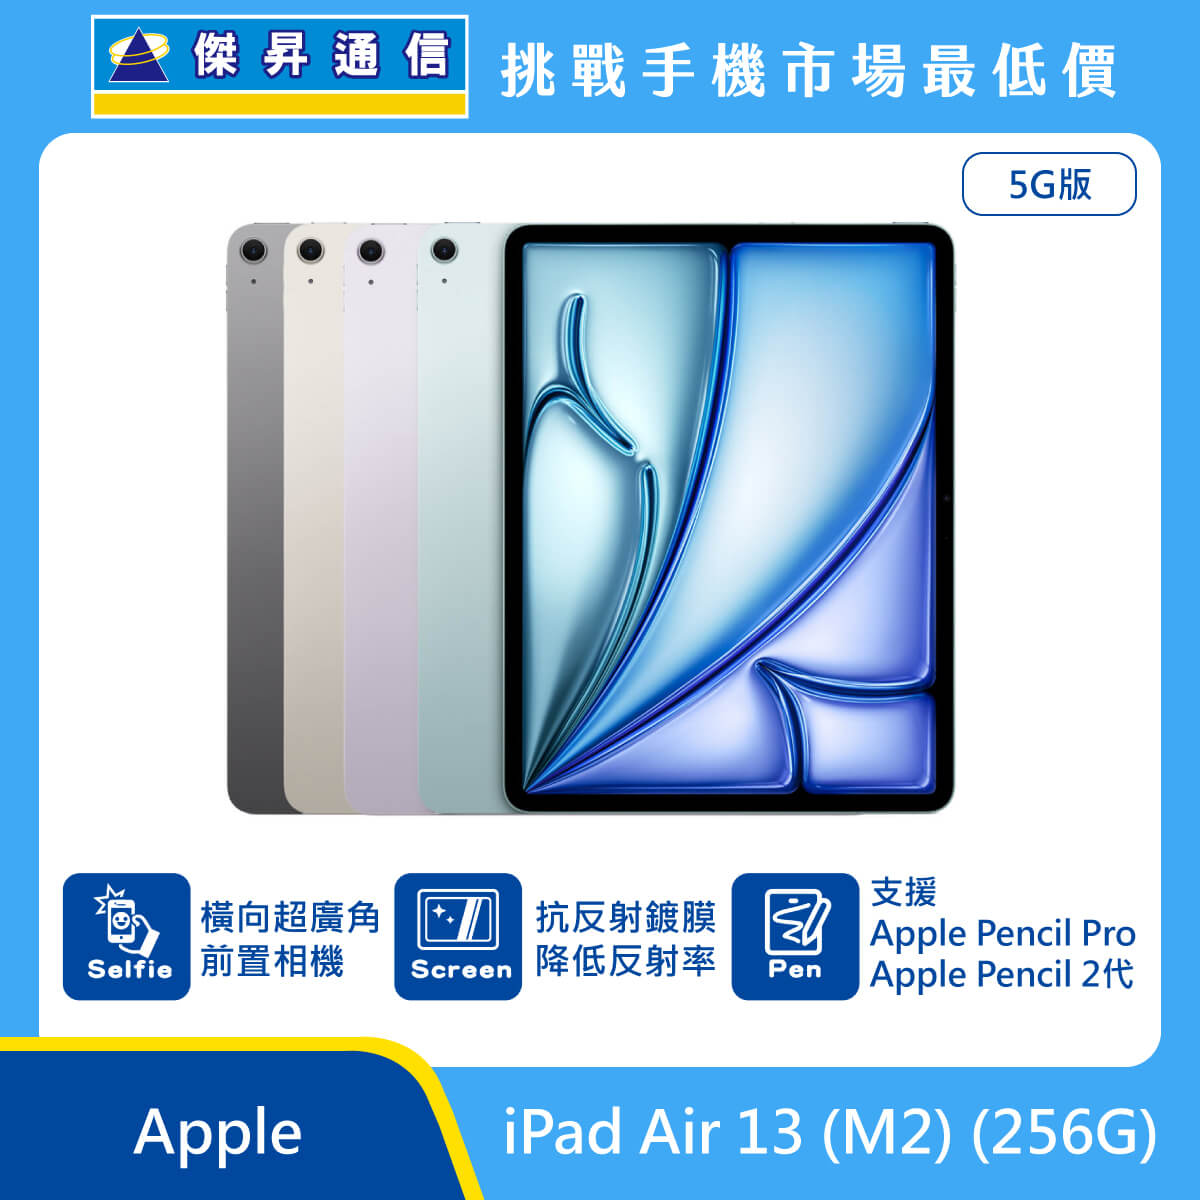 Apple 平板 iPad Air 13 M2 (256G) 即將上市